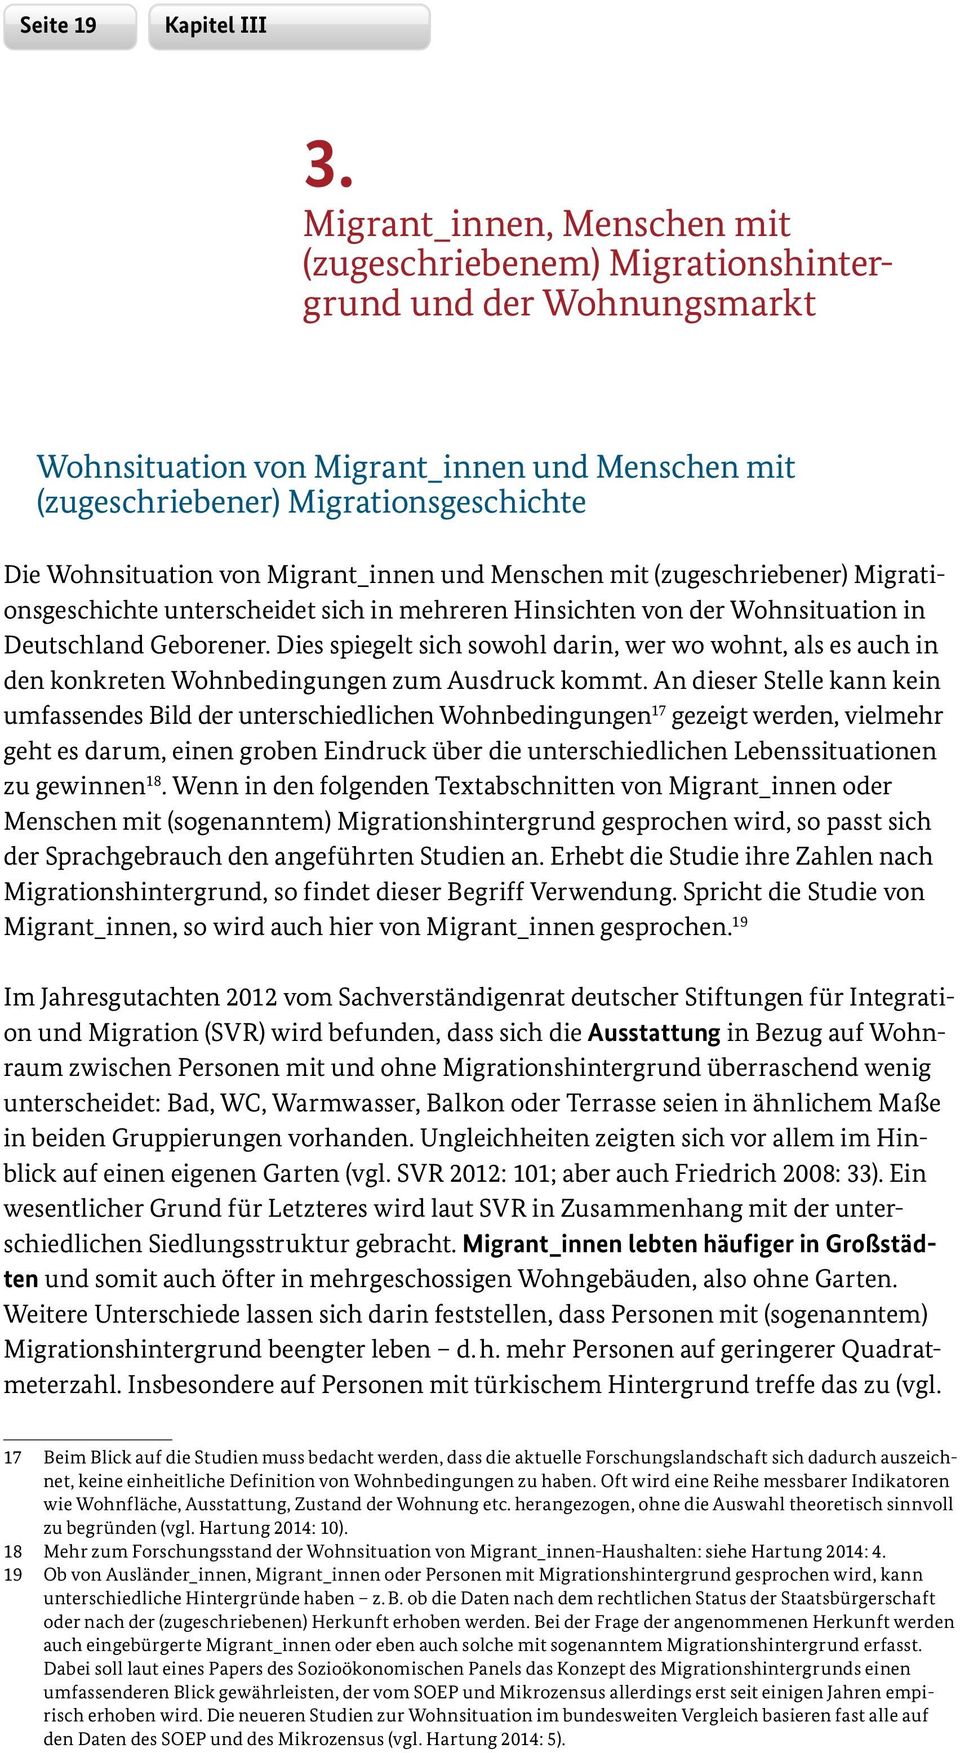 Migrant_innen und Menschen mit (zugeschriebener) Migrationsgeschichte unterscheidet sich in mehreren Hinsichten von der Wohnsituation in Deutschland Geborener.